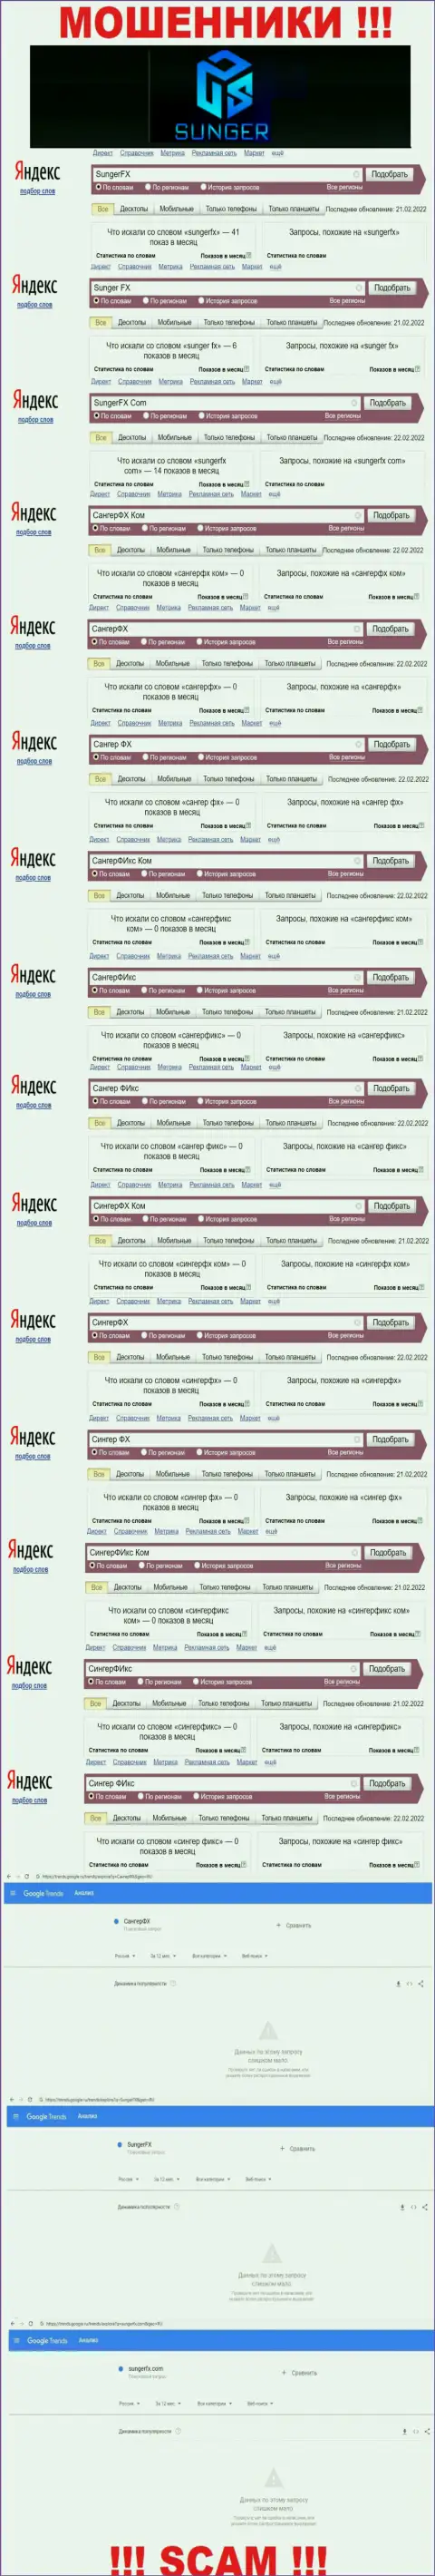 SungerFX Com - это РАЗВОДИЛЫ, сколько именно раз искали в поисковиках всемирной сети internet данную компанию